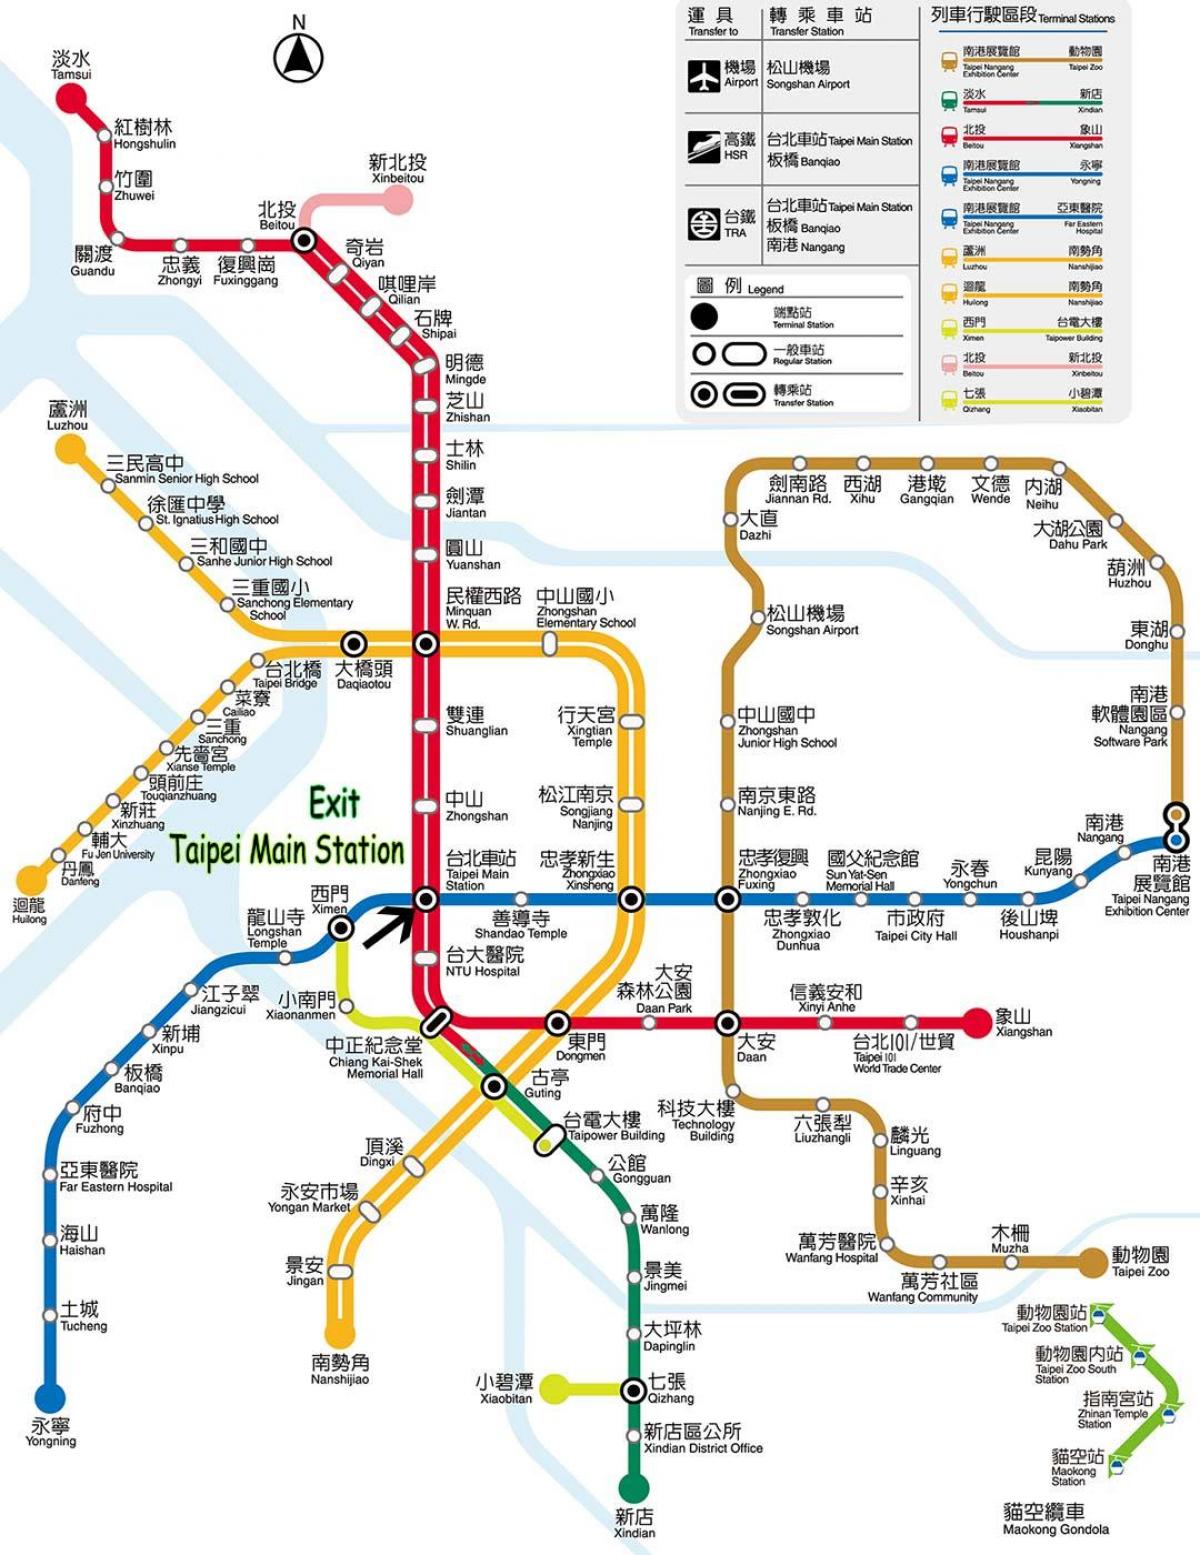 რუკა Taipei ავტოსადგური